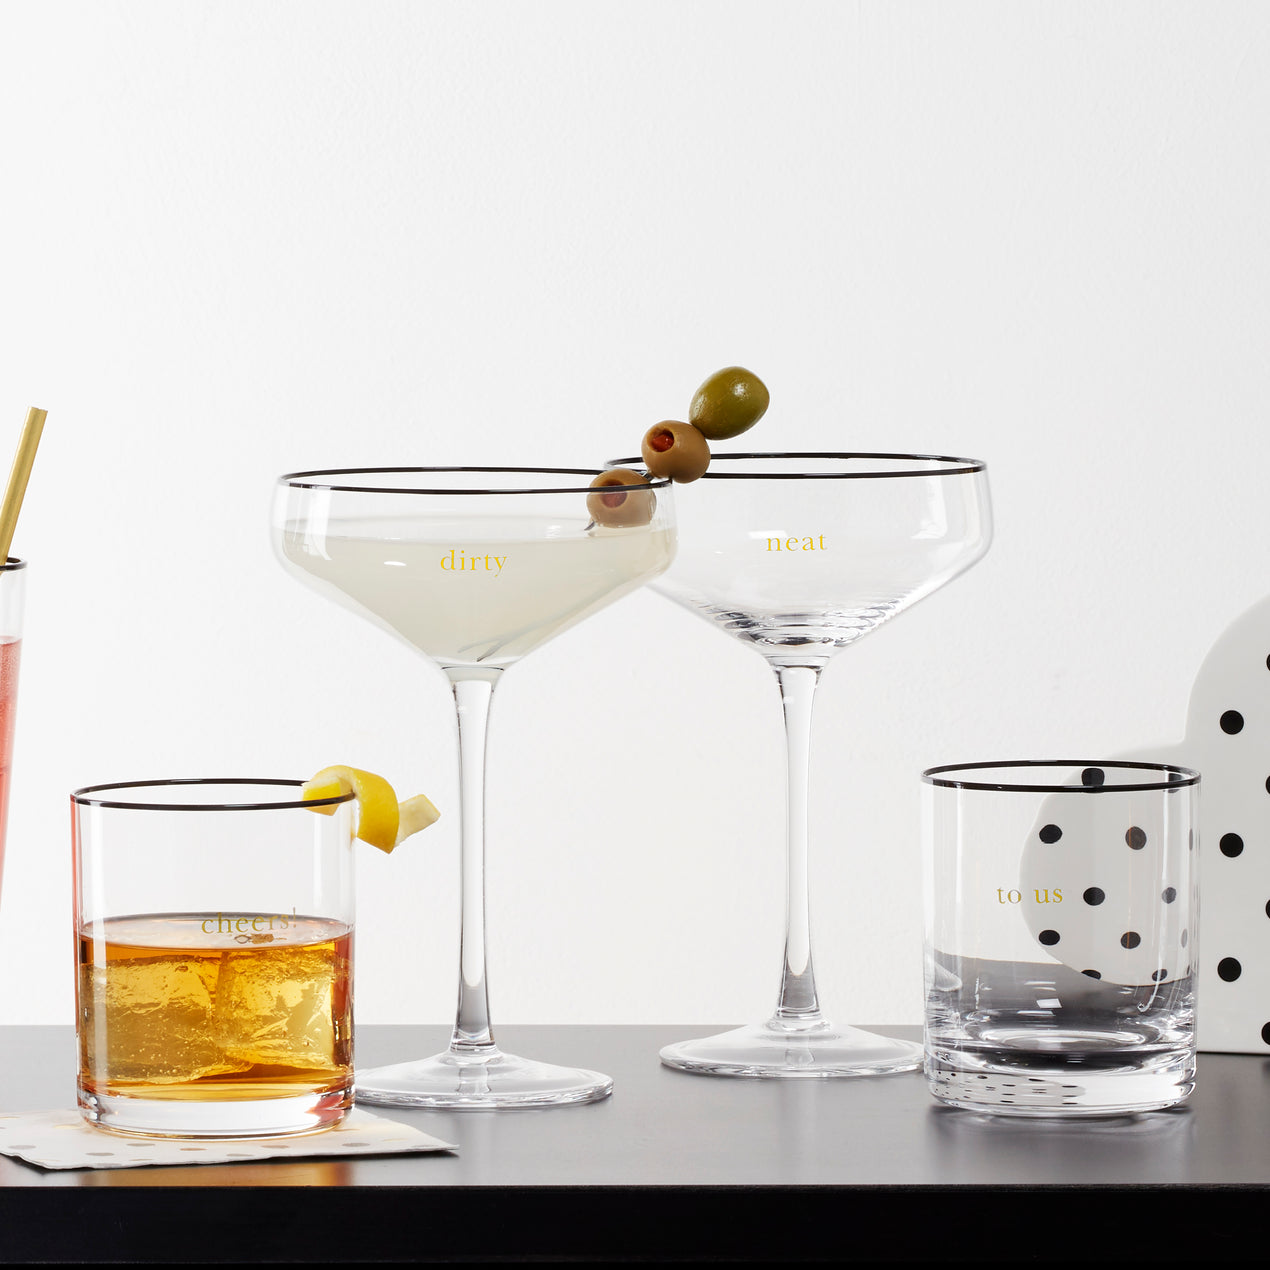 Martini Glasses - Set of 2 – ASHLEY STARK HOME